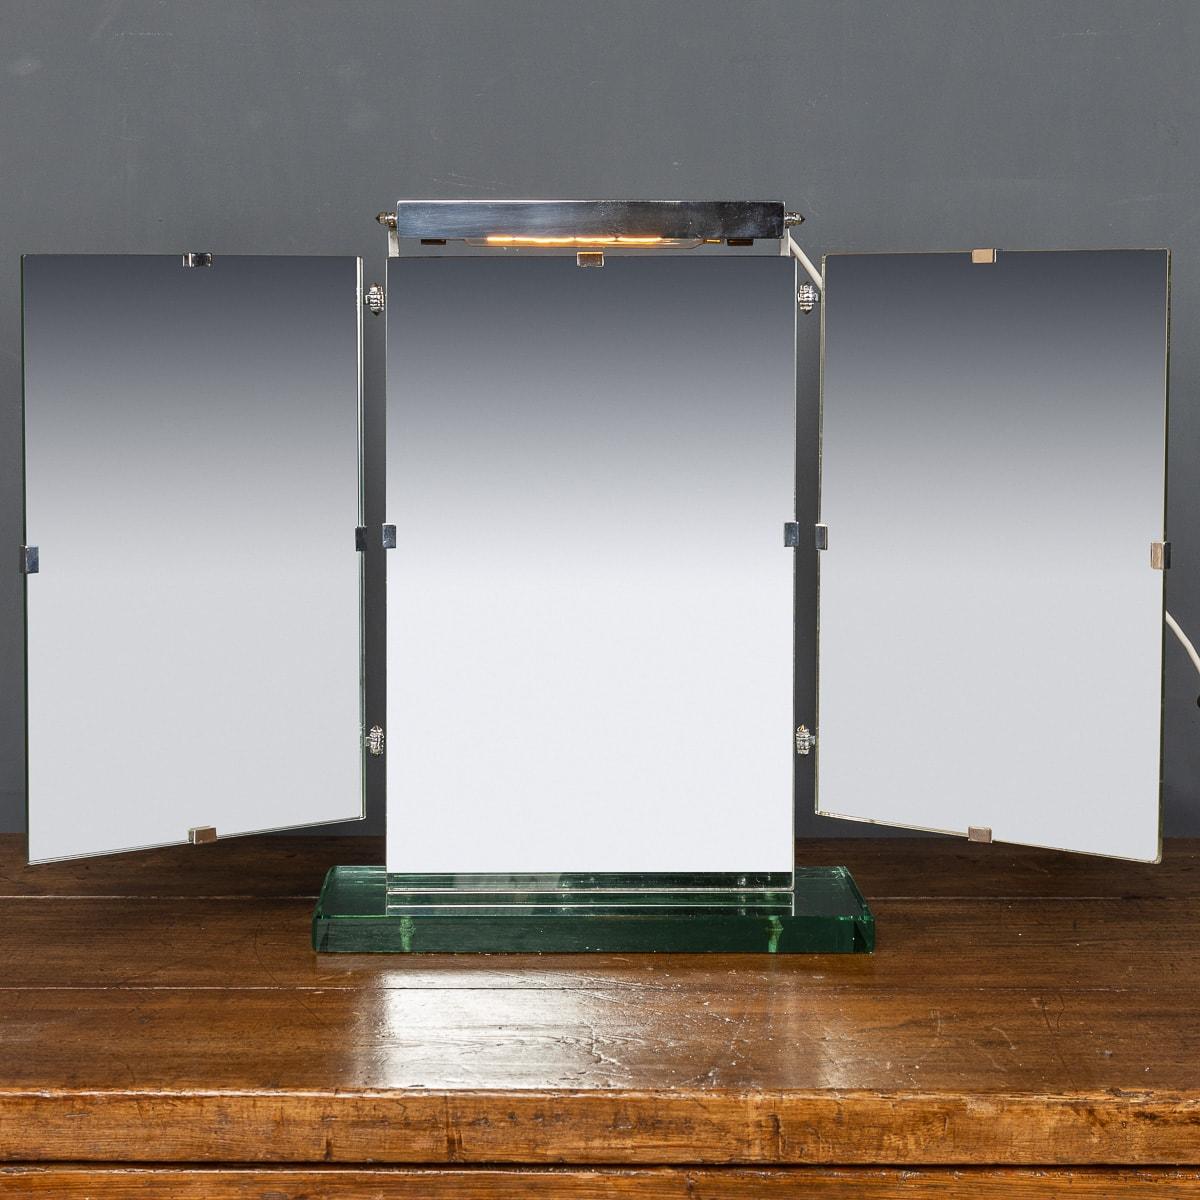 Antique début du 20e siècle Miroir triple de style déco avec une lourde base en verre pour contrebalancer le poids des trois miroirs. Cette pièce comporte un abat-jour au-dessus du miroir central, vers 1930.

CONDITION
En très bon état - usure due à